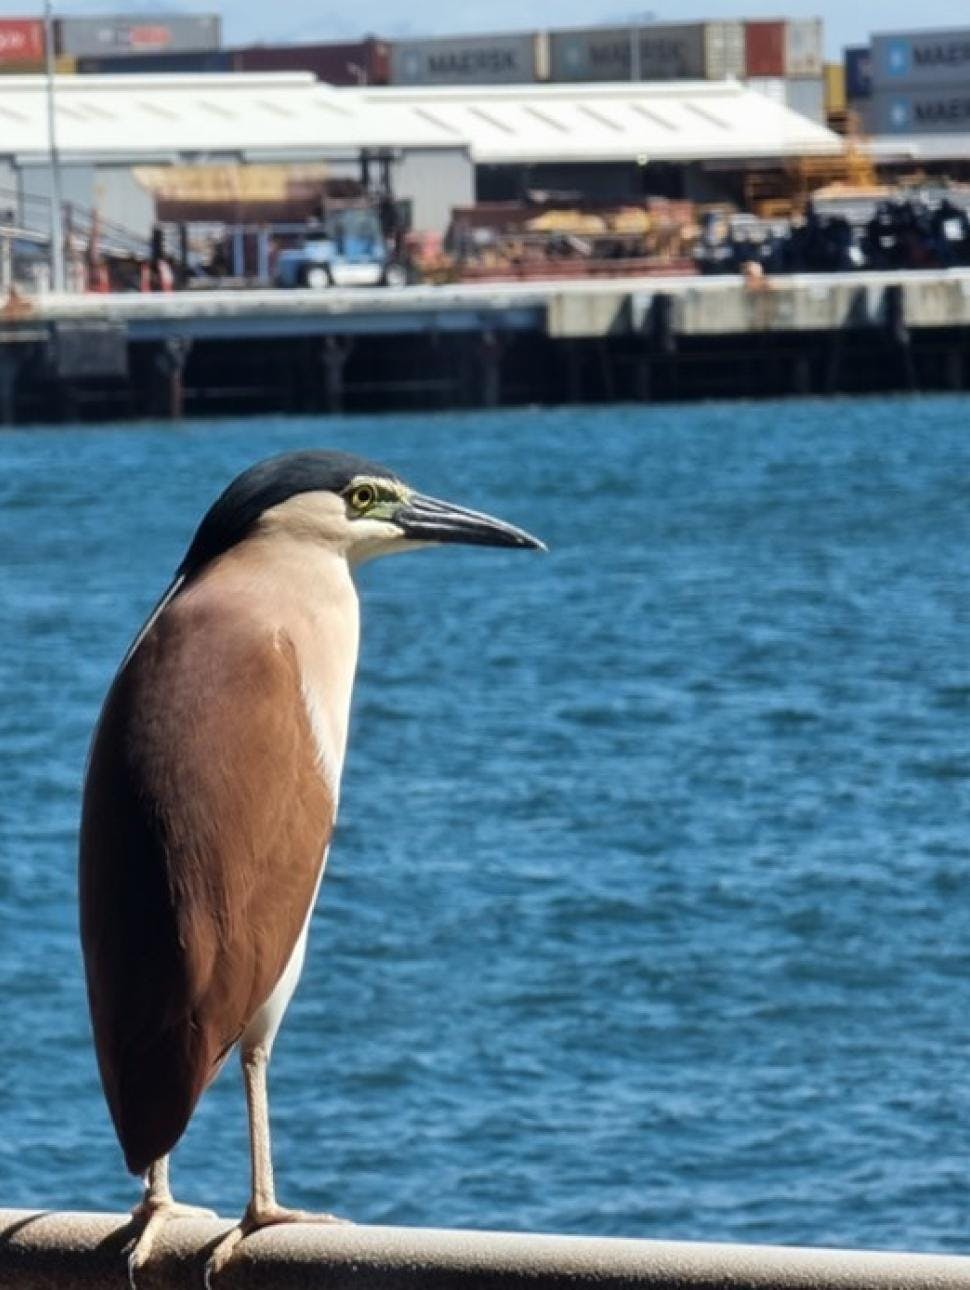 Bird overlooking Fremantle port